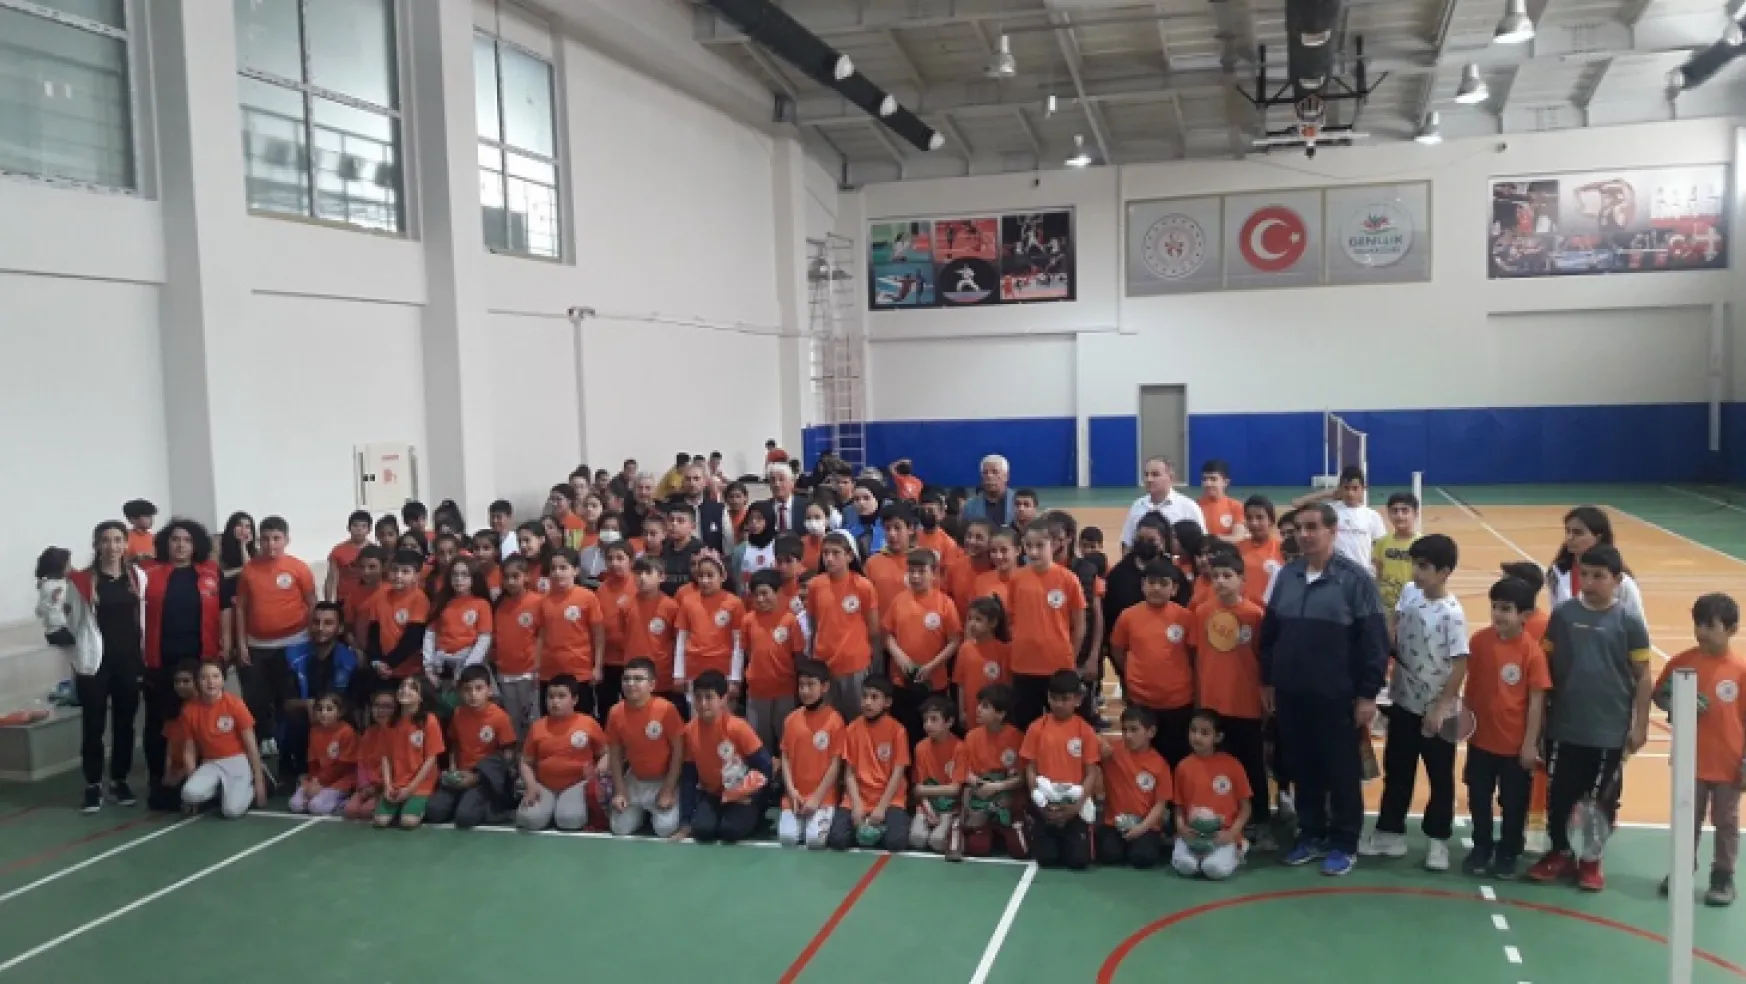 Yeşilyurt Belediyesi, Badminton Kursuna Katılan 300 Sporcuya Malzeme Desteğinde Bulundu